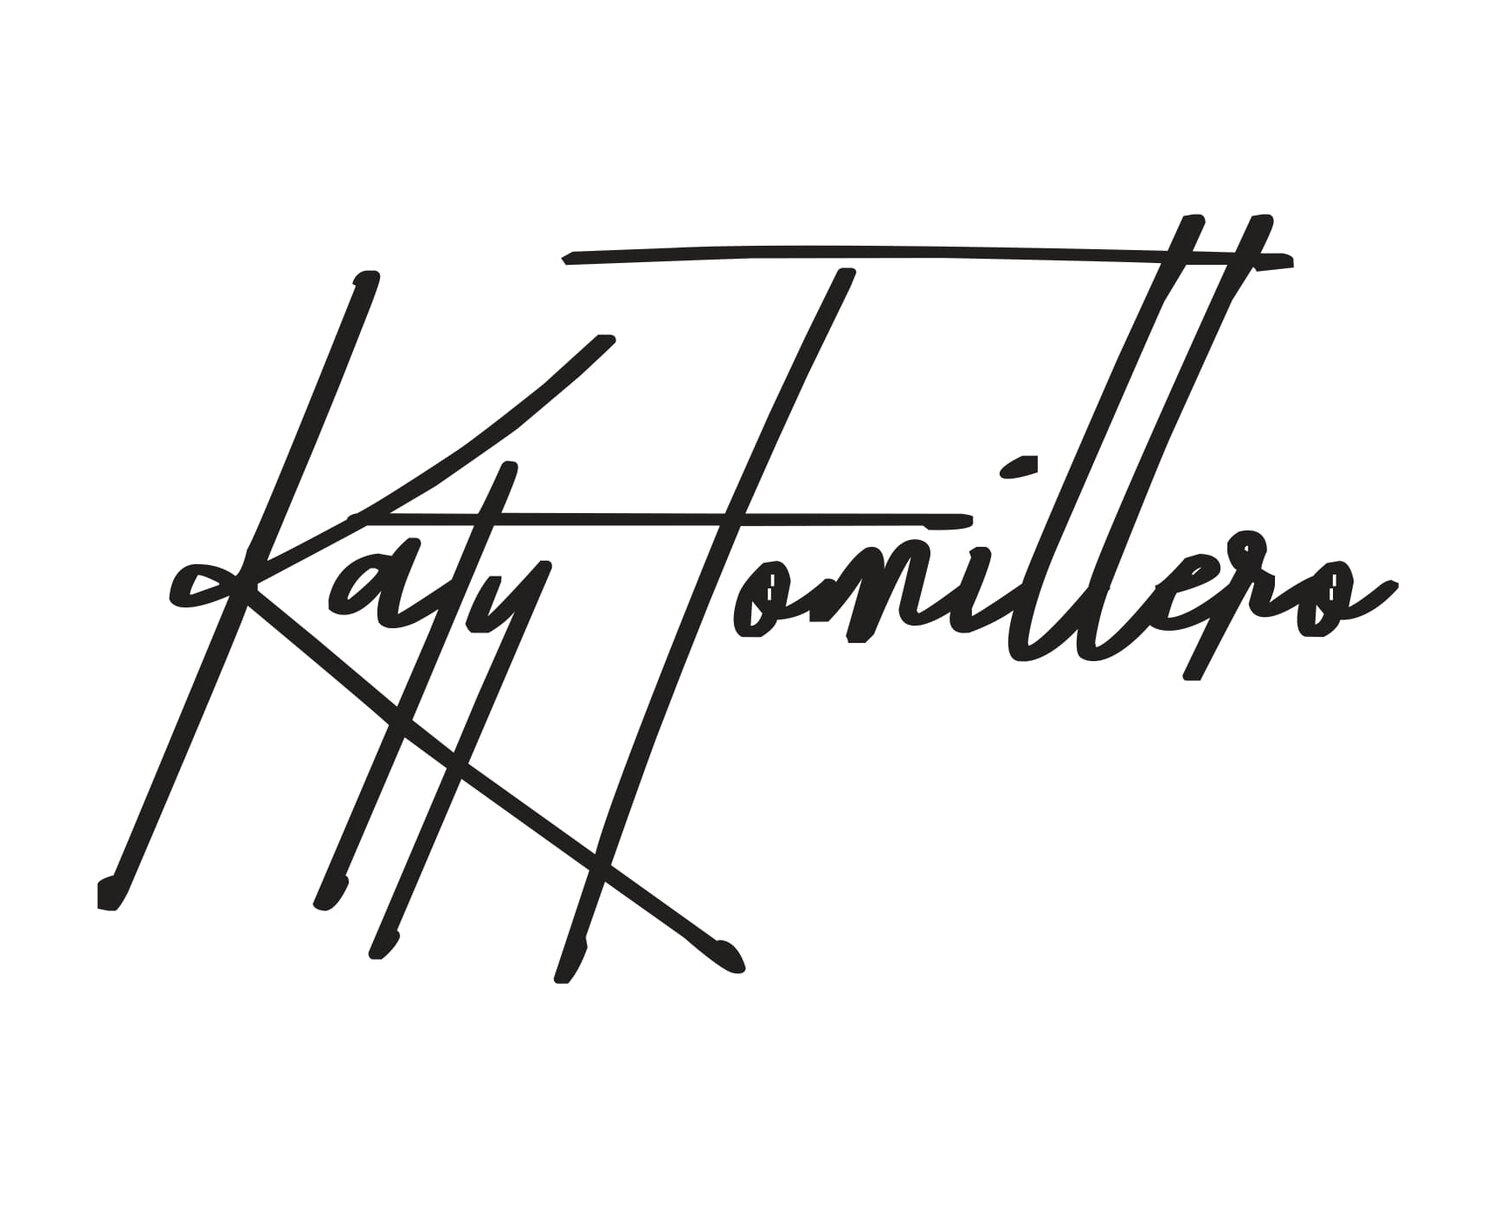 Katy Tomillero